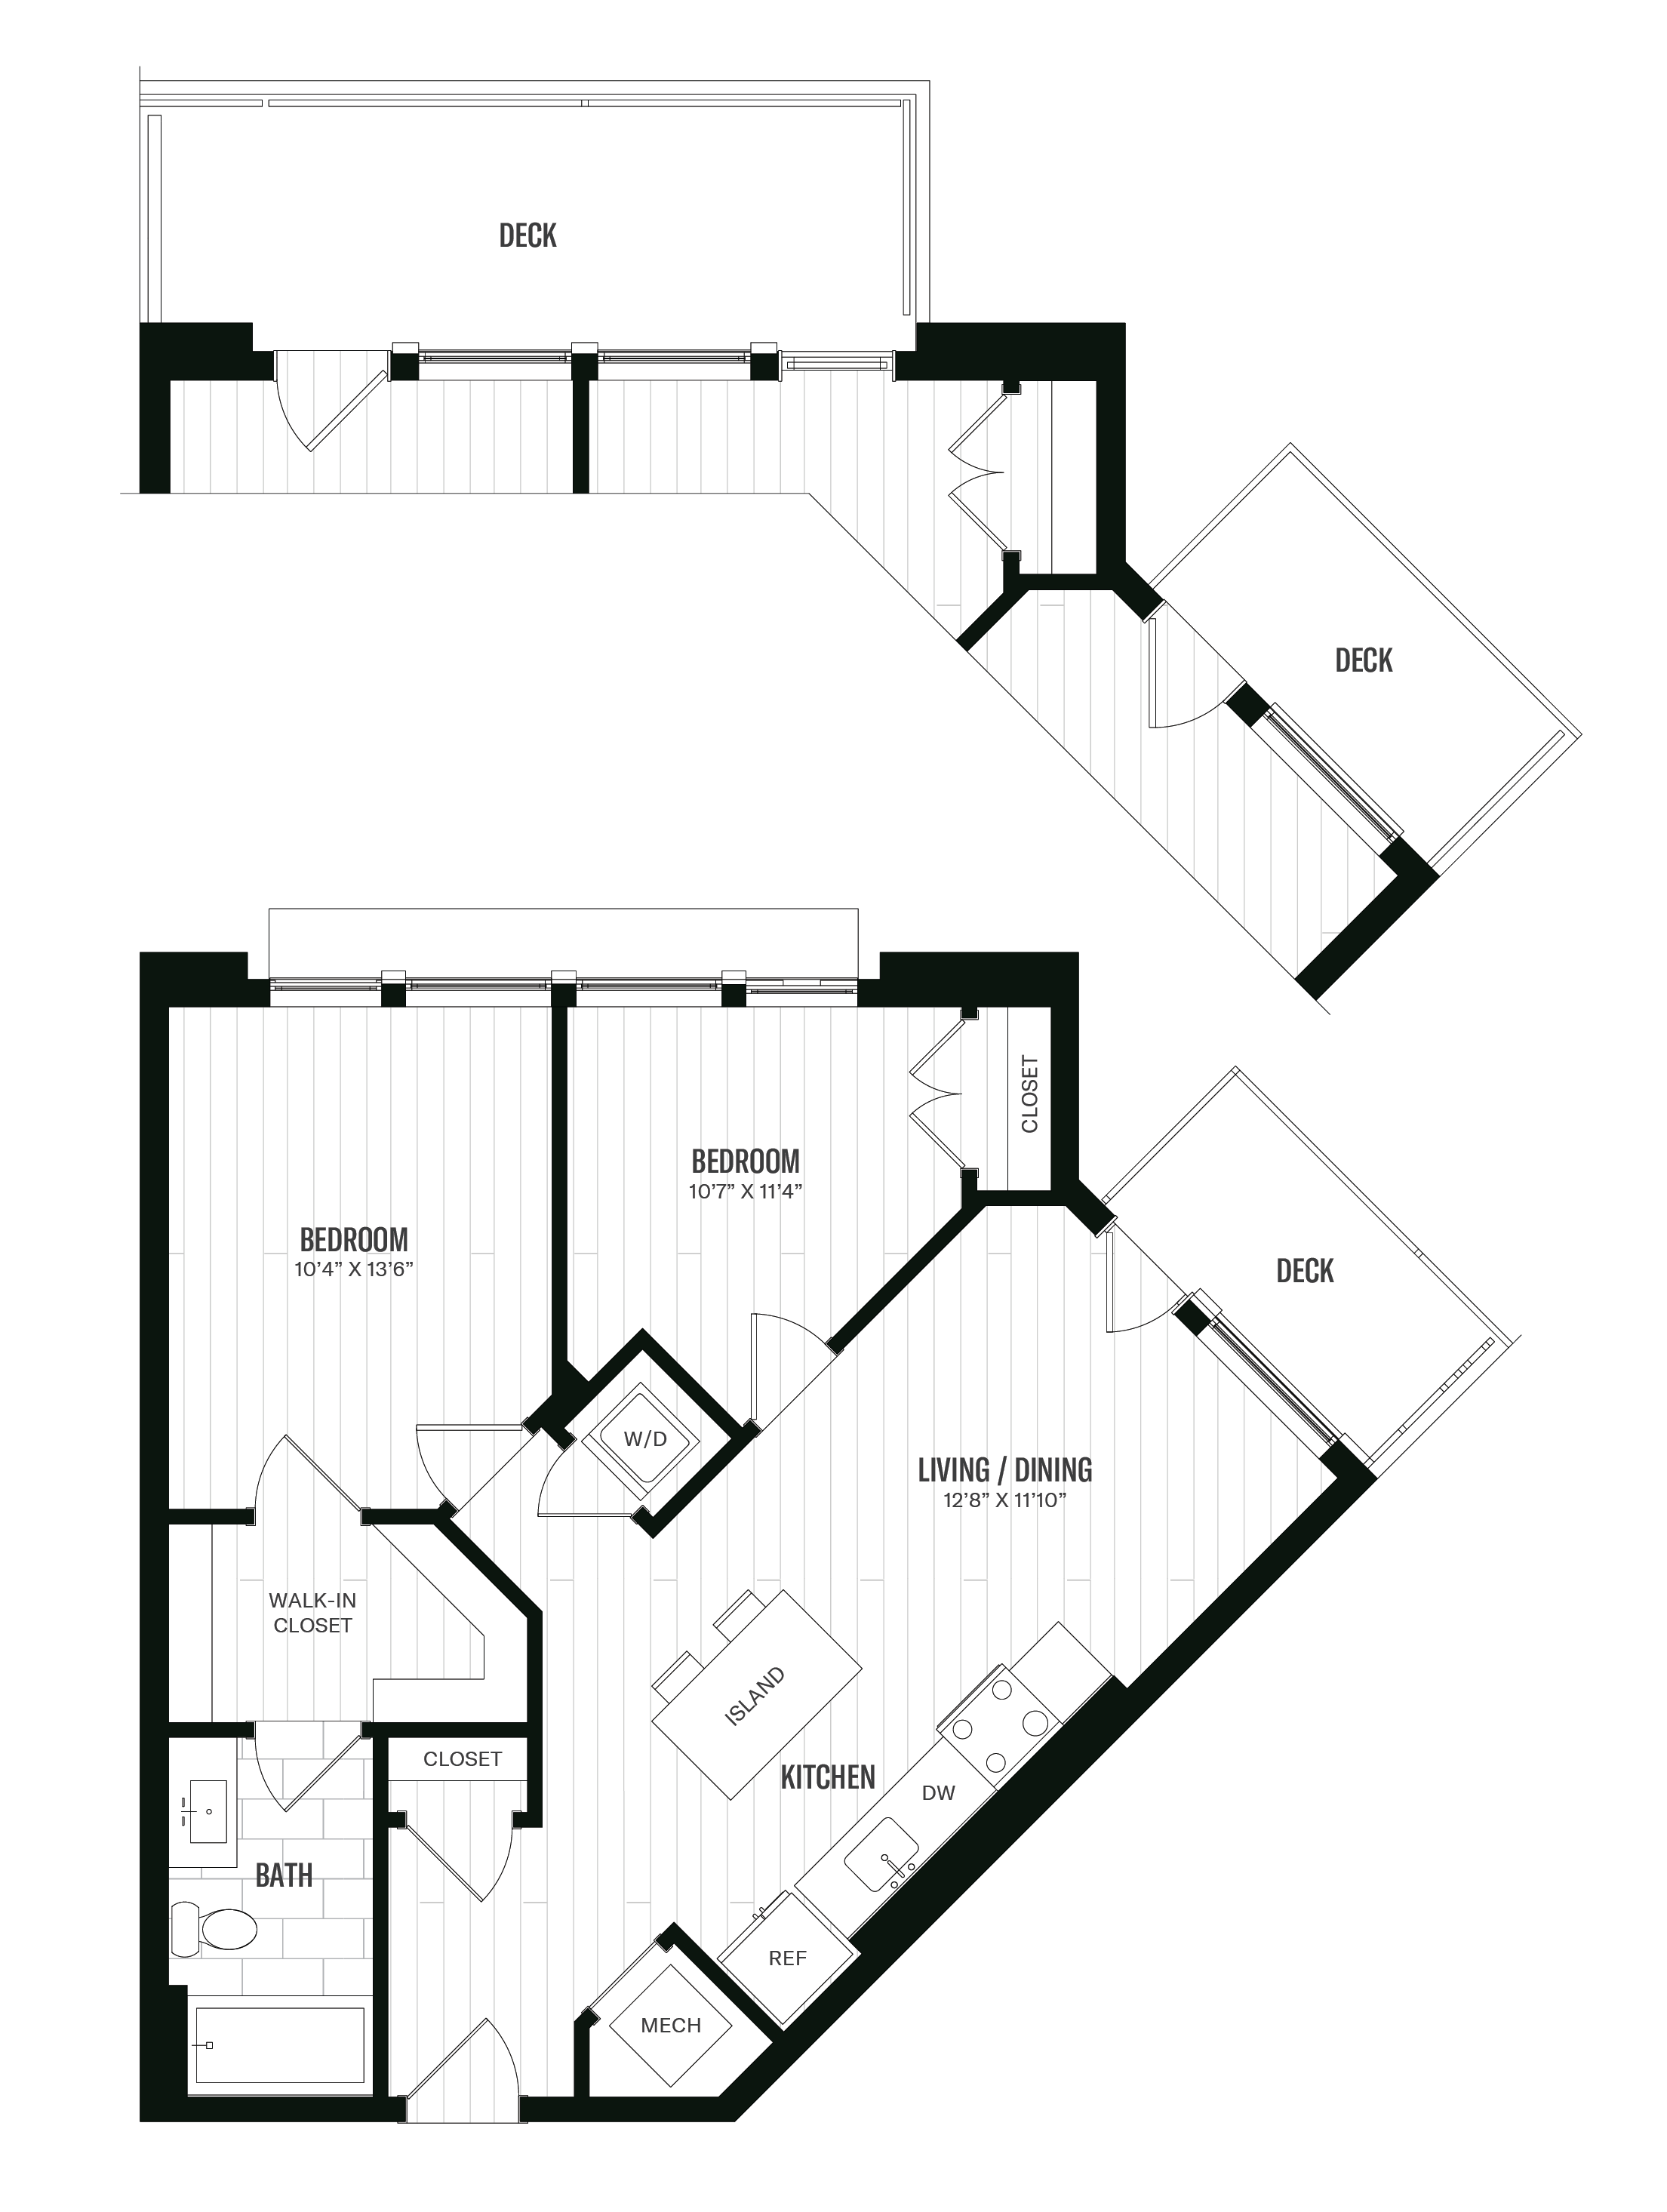 Floorplan image of unit 214